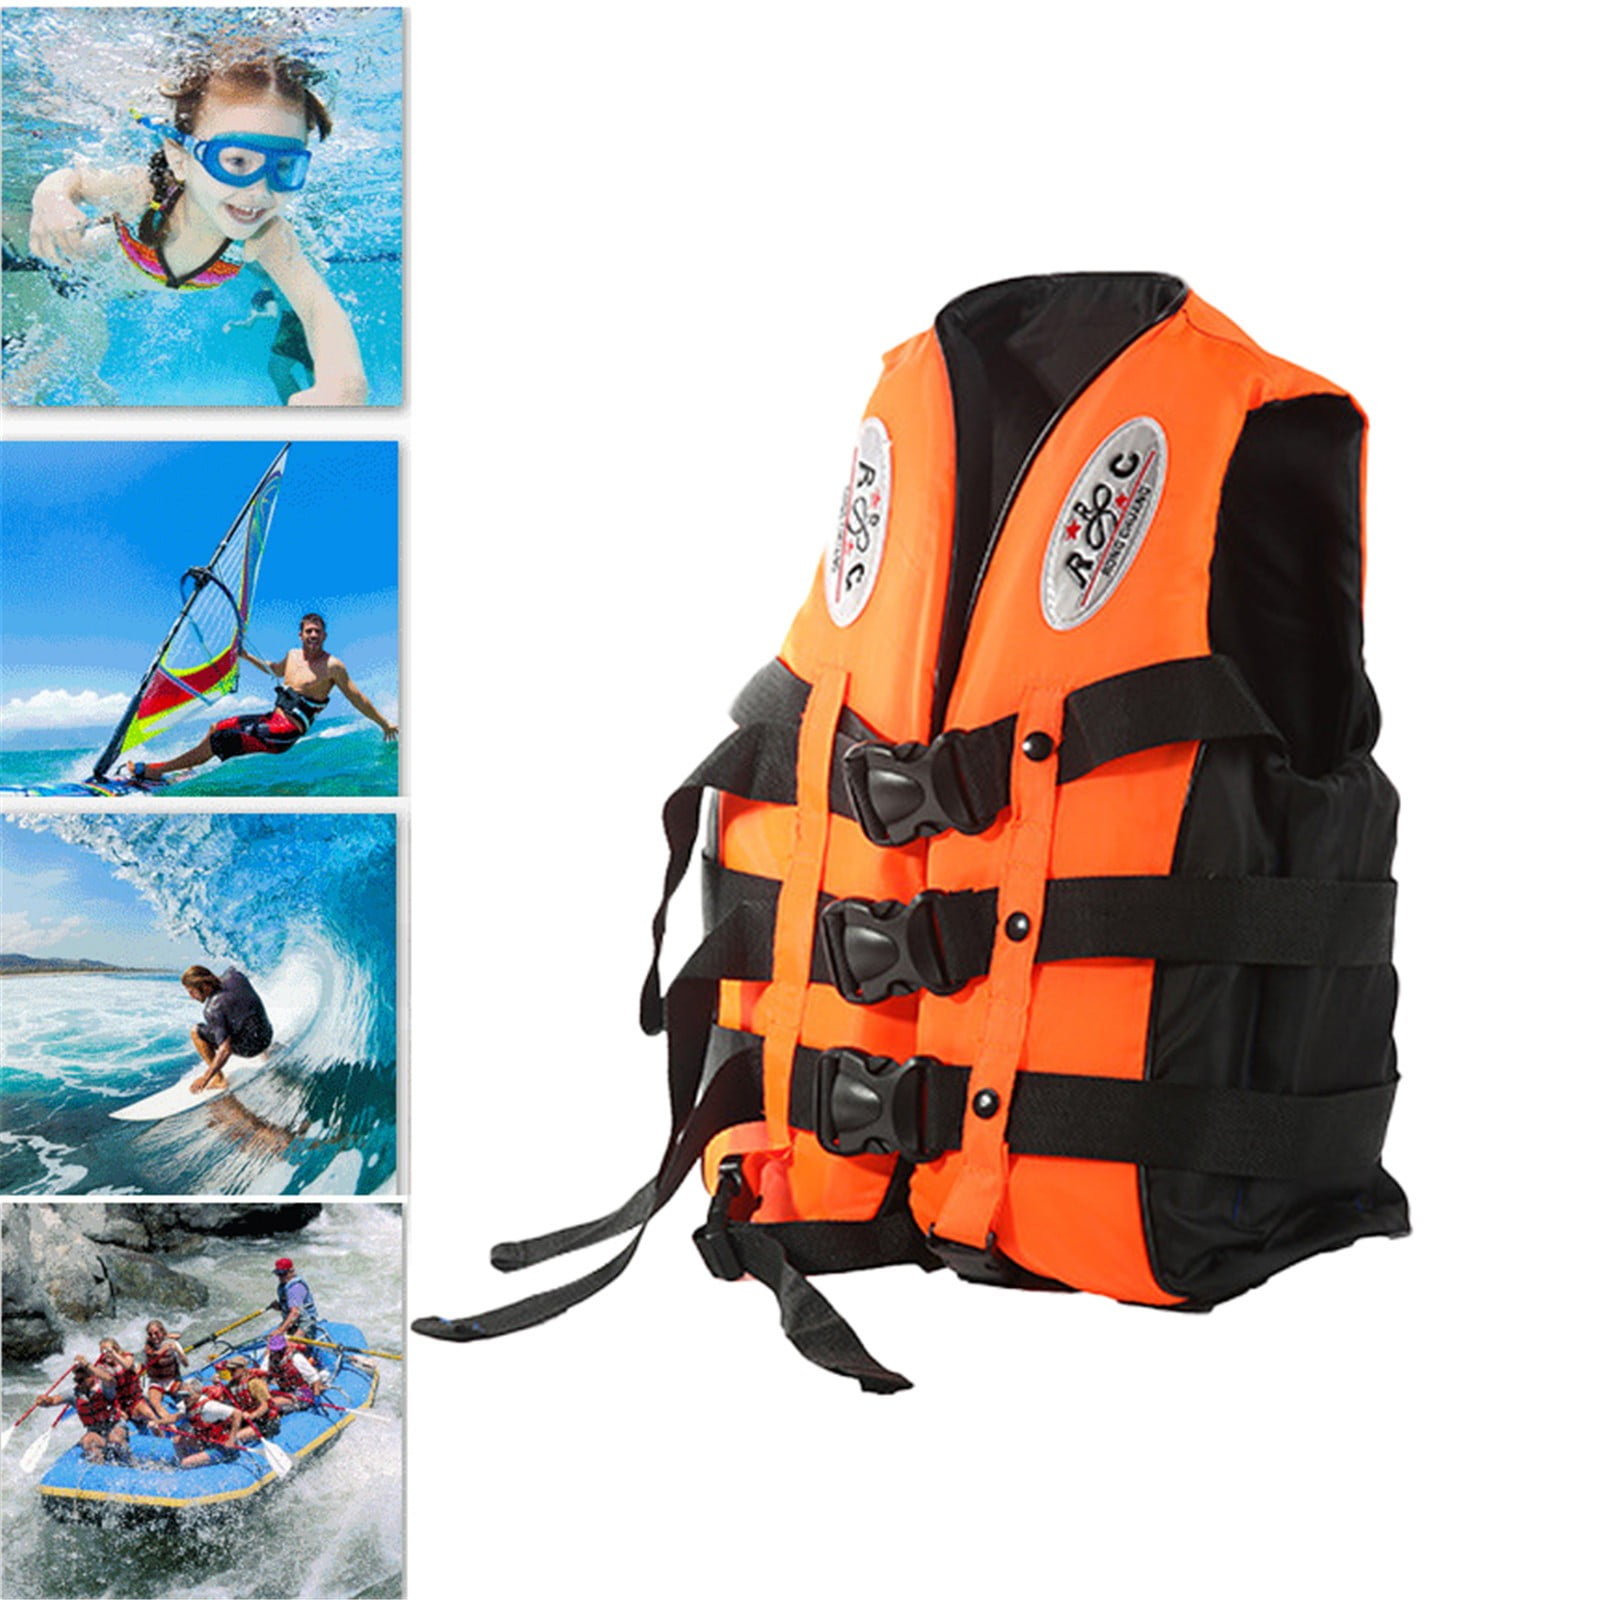 Adult Life Jacket Kayak Ski Buoyancy Aid Vest Sailing Boating Swimming Fishing 